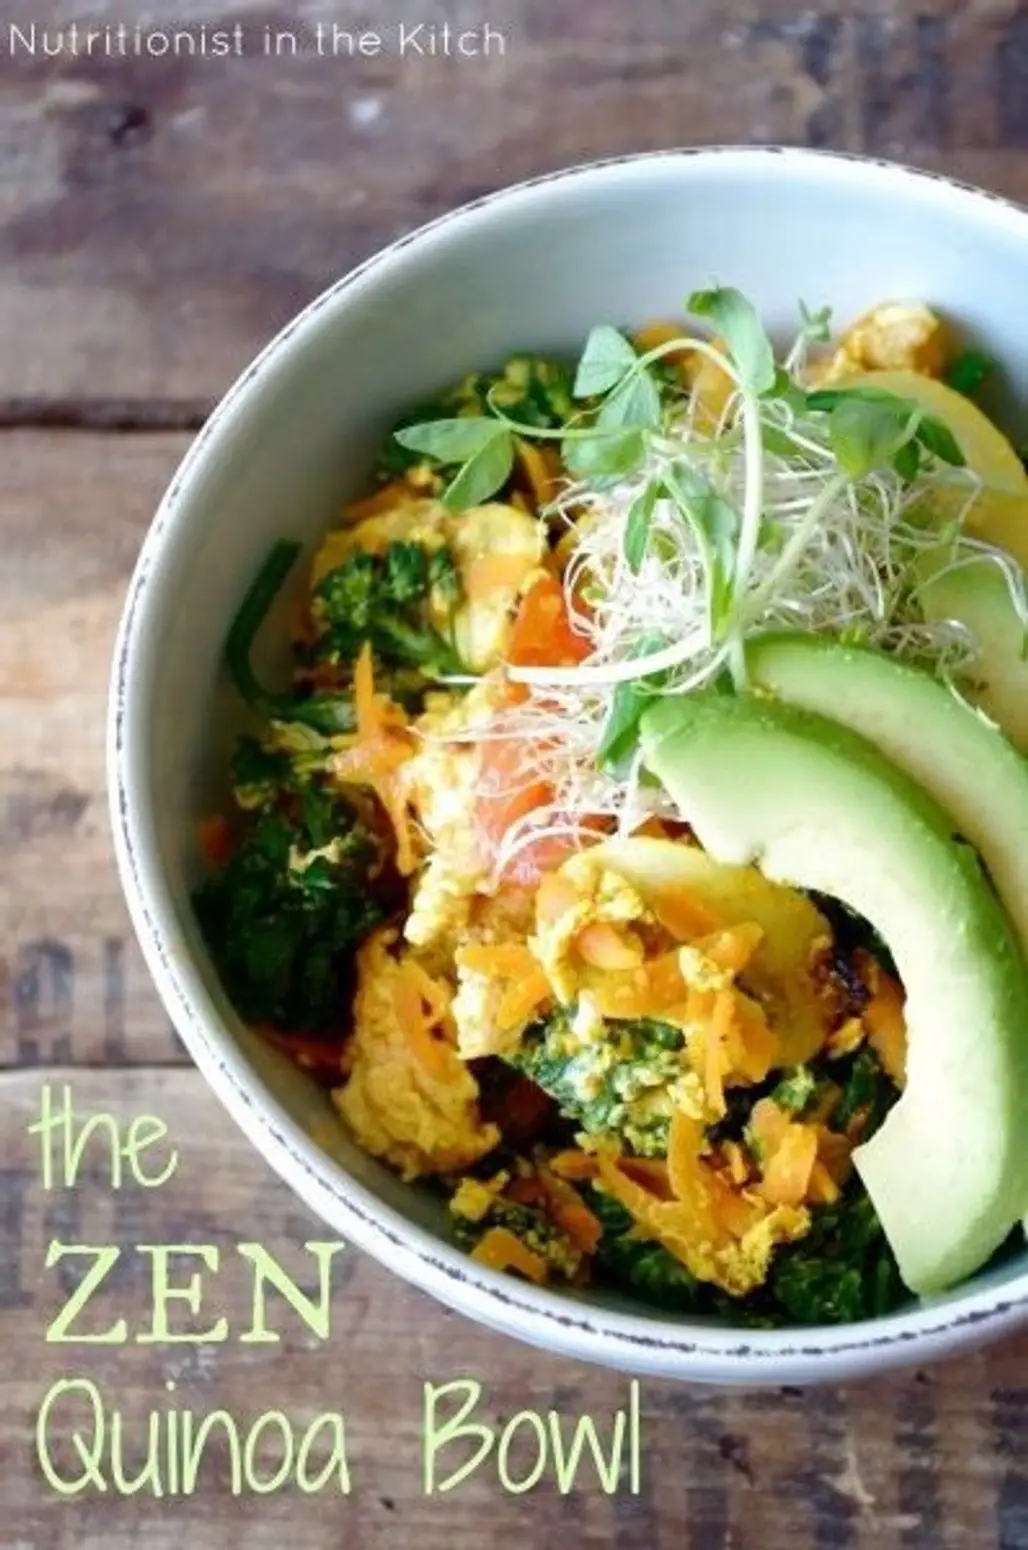 The “Zen” Quinoa